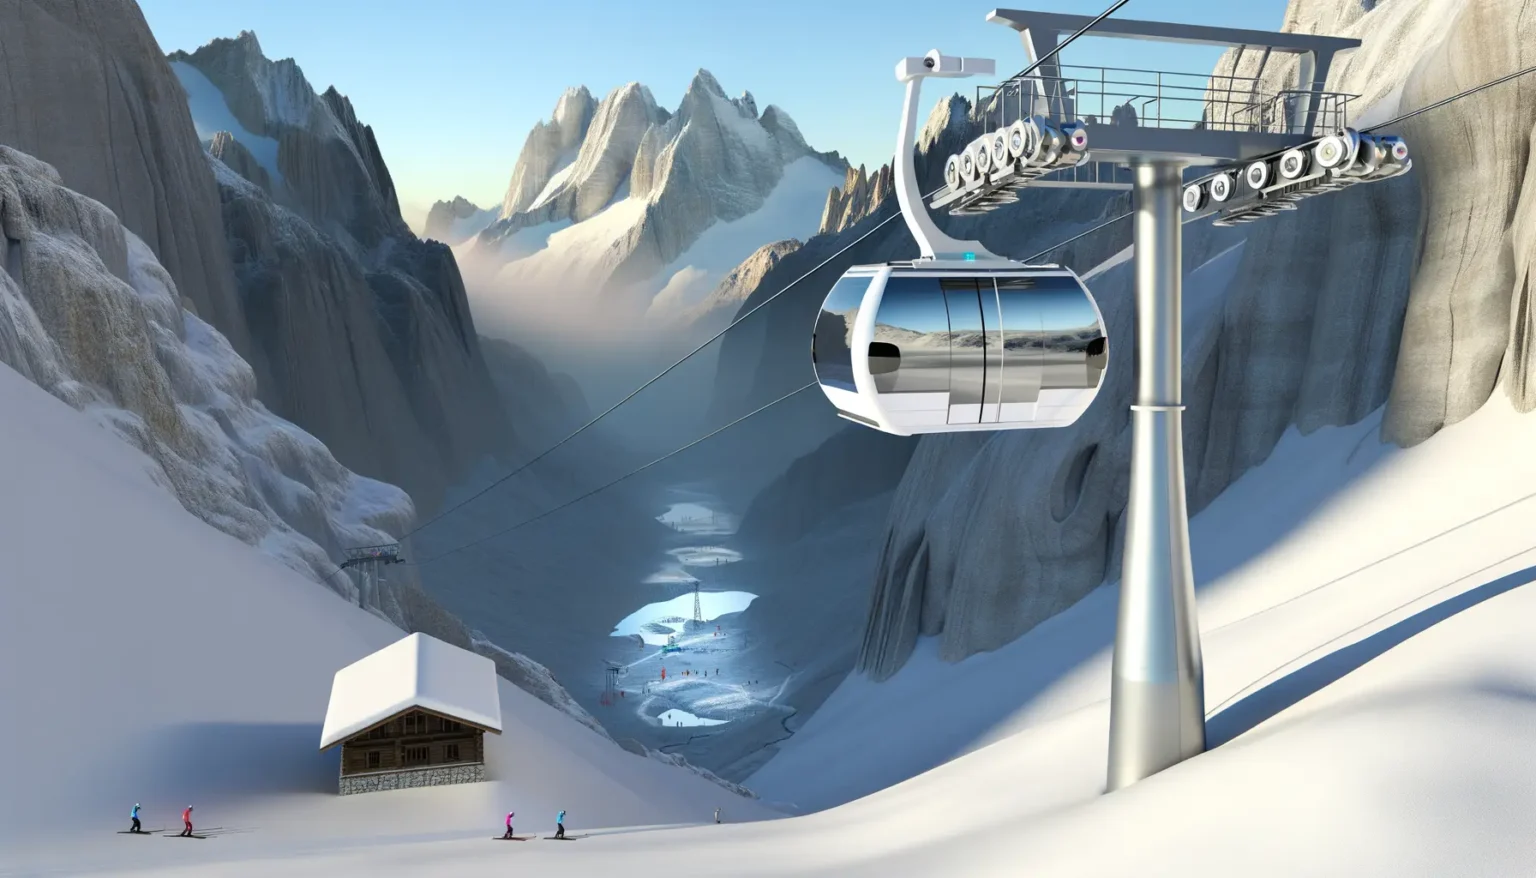 Moderne Seilbahnkabine, die in einer verschneiten Berglandschaft fährt, mit Skifahrern unten am Berg und einer kleinen Hütte im Vordergrund. Im Hintergrund sind beeindruckende schneebedeckte Gipfel und ein eisiger Hang sichtbar.